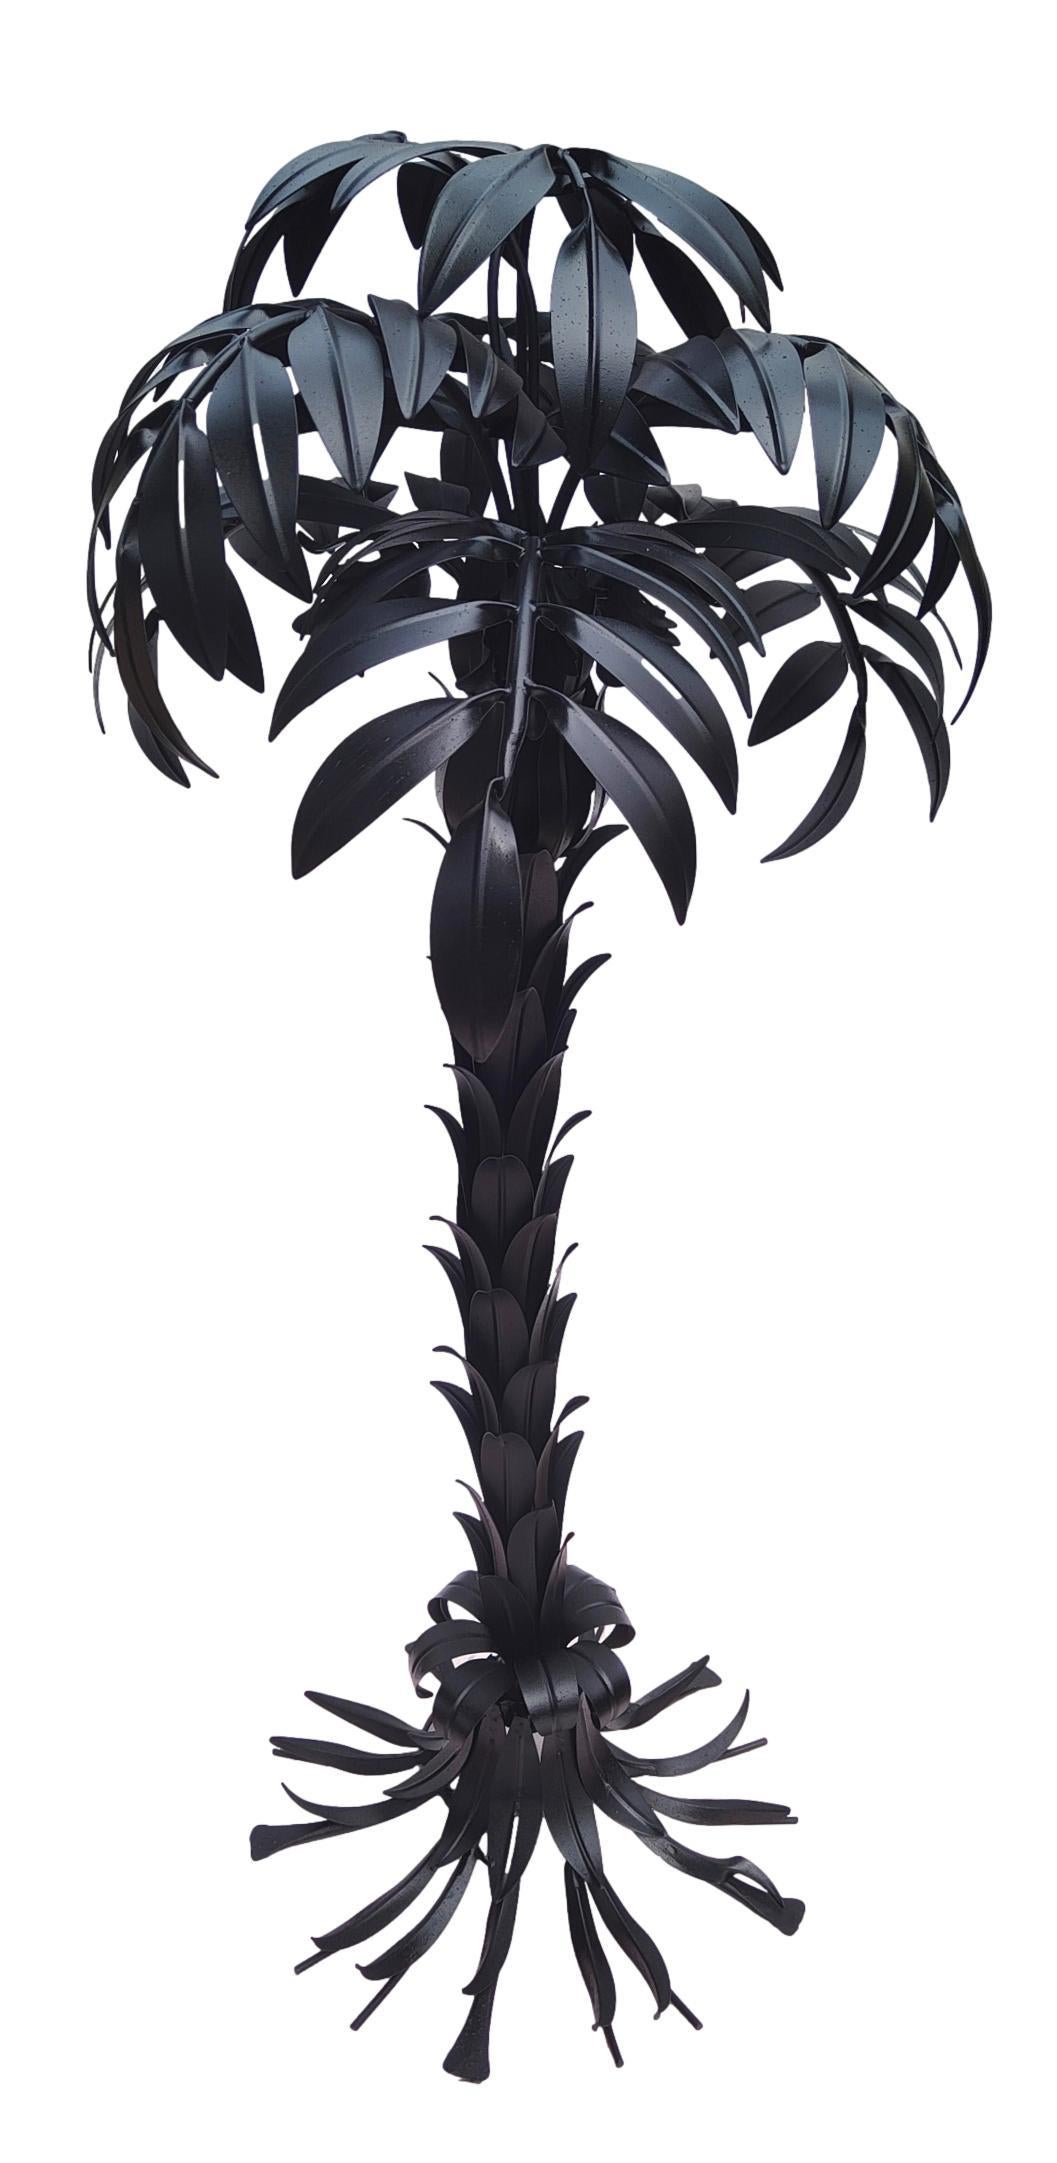 stehleuchte 'palm lamp', entworfen von hans kogl , anfang der 1970er jahre, deutschland.
Aus absolut schwarzem Metall, in Form einer Palme, mit Blättern und Stamm.

Höhe 110 cm, seitliche Belastung ca. 55 cm, in sehr gutem Zustand, wie auf dem Foto,